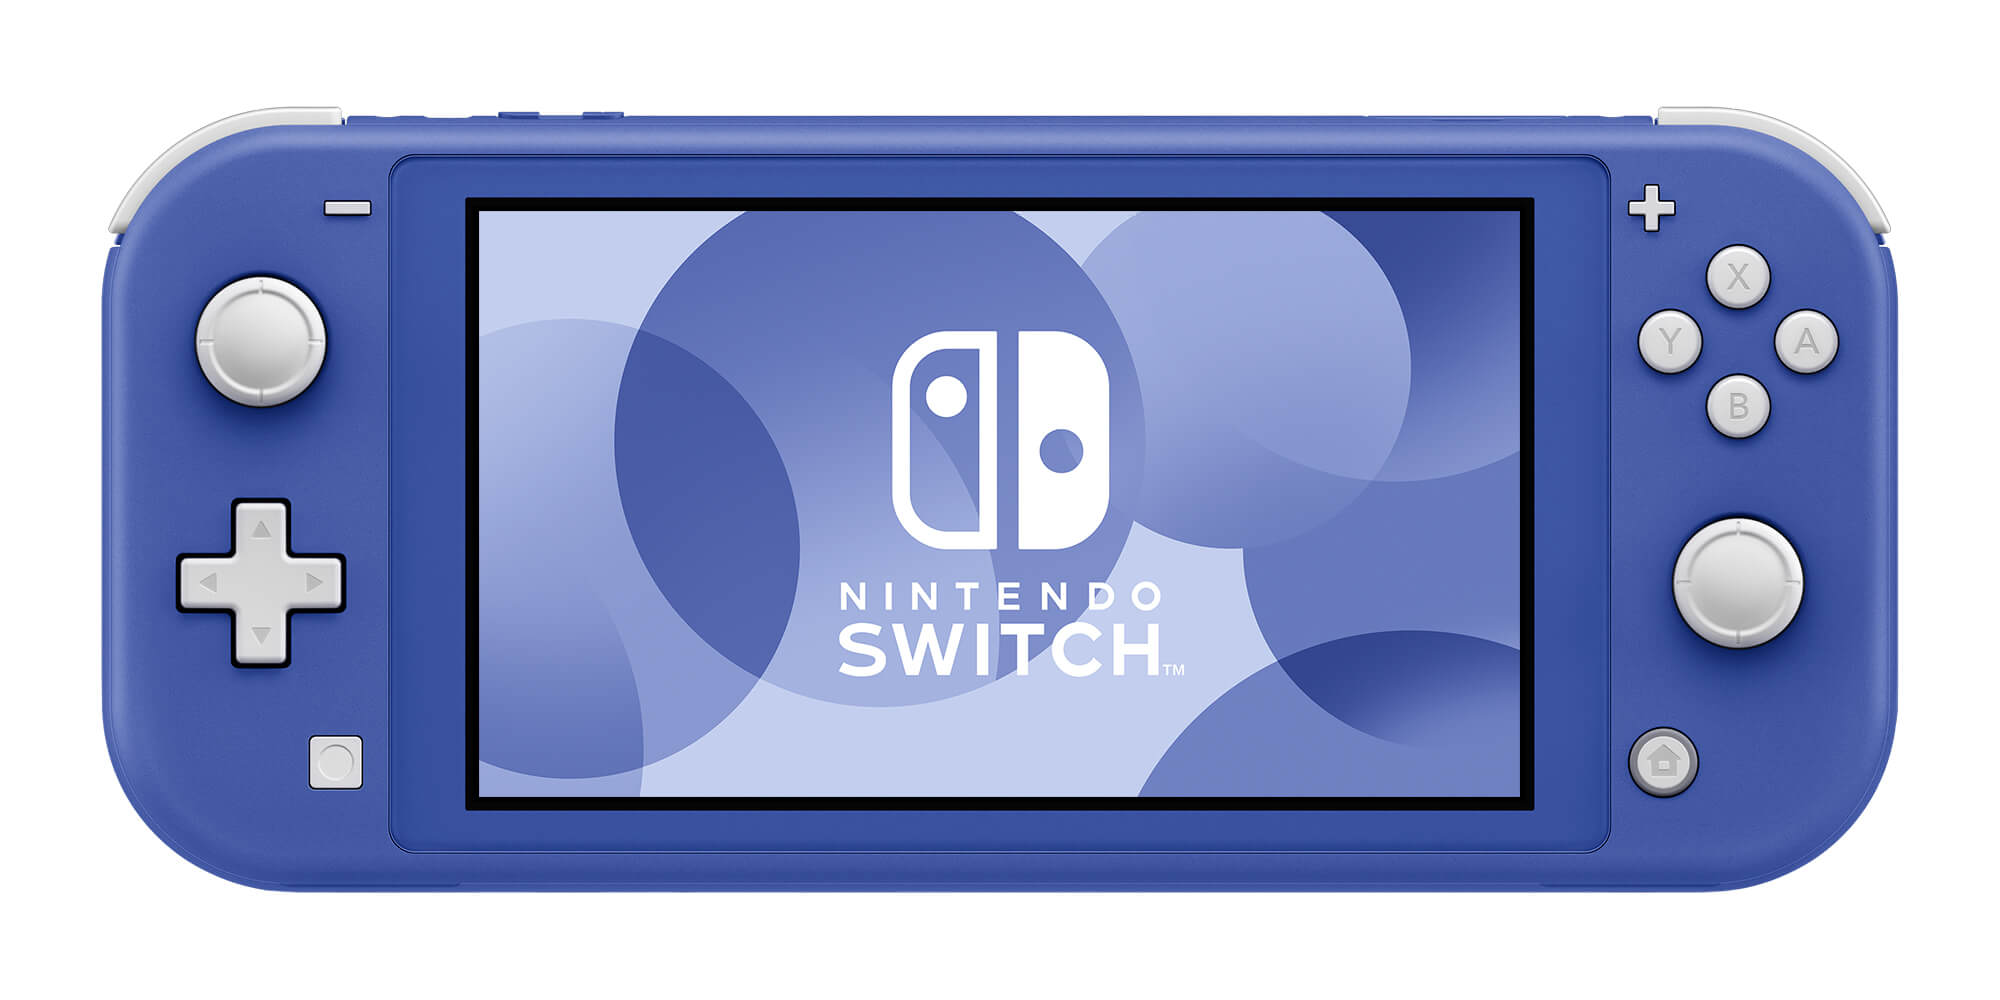 Muy pronto tendremos un nuevo diseño de Switch en el mercado